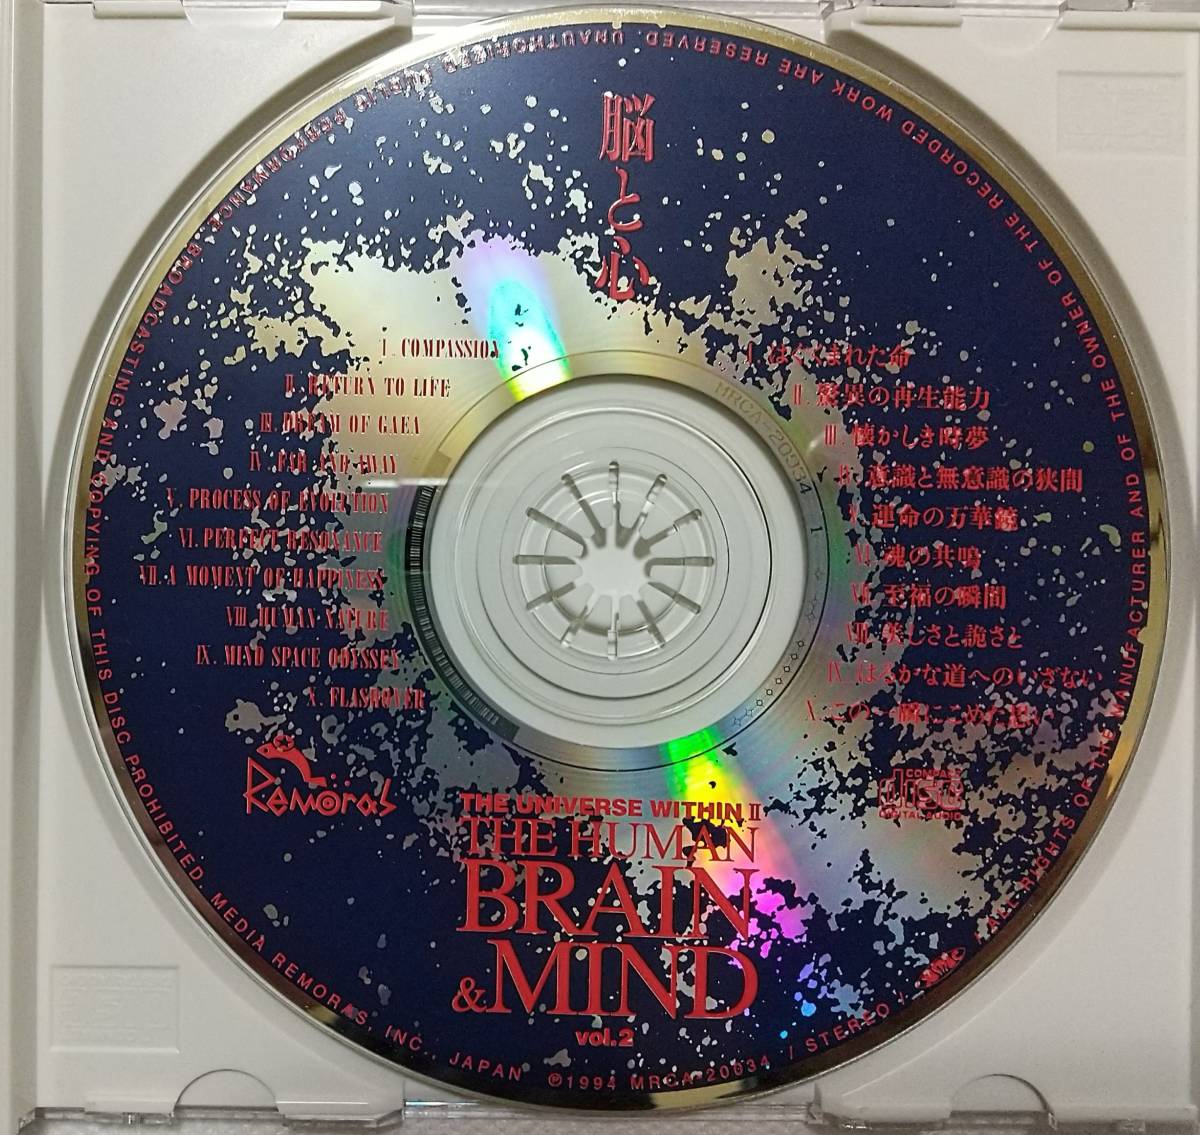 *中古CD / 久石譲 NHKスペシャル 驚異の小宇宙 人体II 脳と心 サウンドトラック Vol.2 BRAIN&MIND / 匿名配送・ネコポスにて_ノークレーム・ノーリターンでお願いします